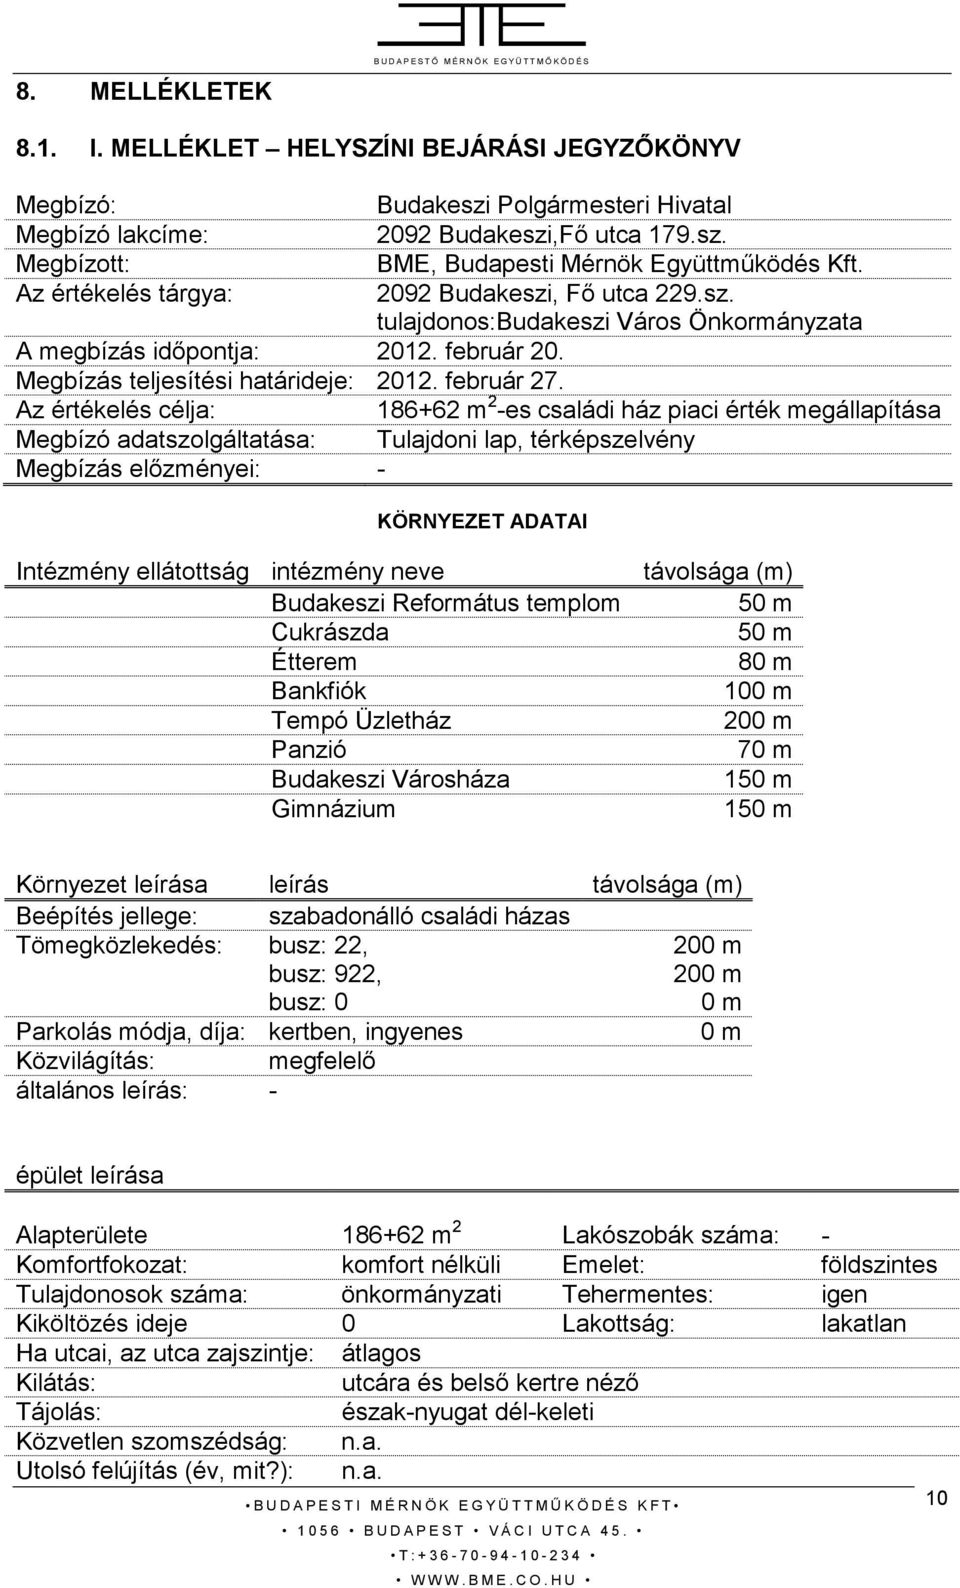 Az értékelés tárgya: 2092 Budakeszi, Fı utca 229.sz. tulajdonos:budakeszi Város Önkormányzata A megbízás idıpontja: 2012. február 20. Megbízás teljesítési határideje: 2012. február 27.